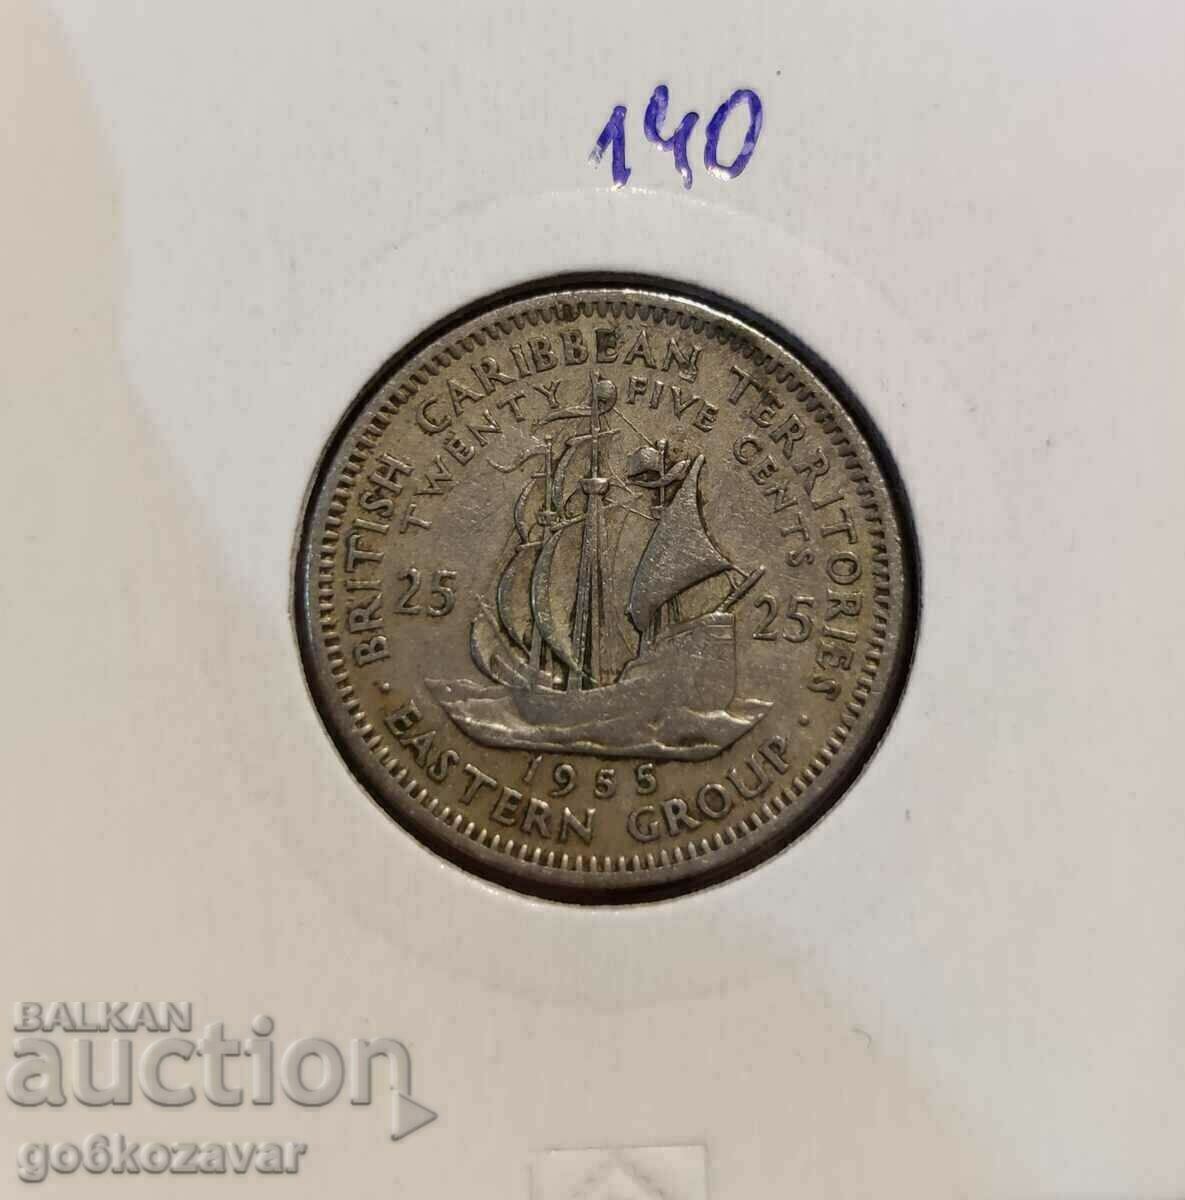 Eastern Caribbean 25 cents 1955